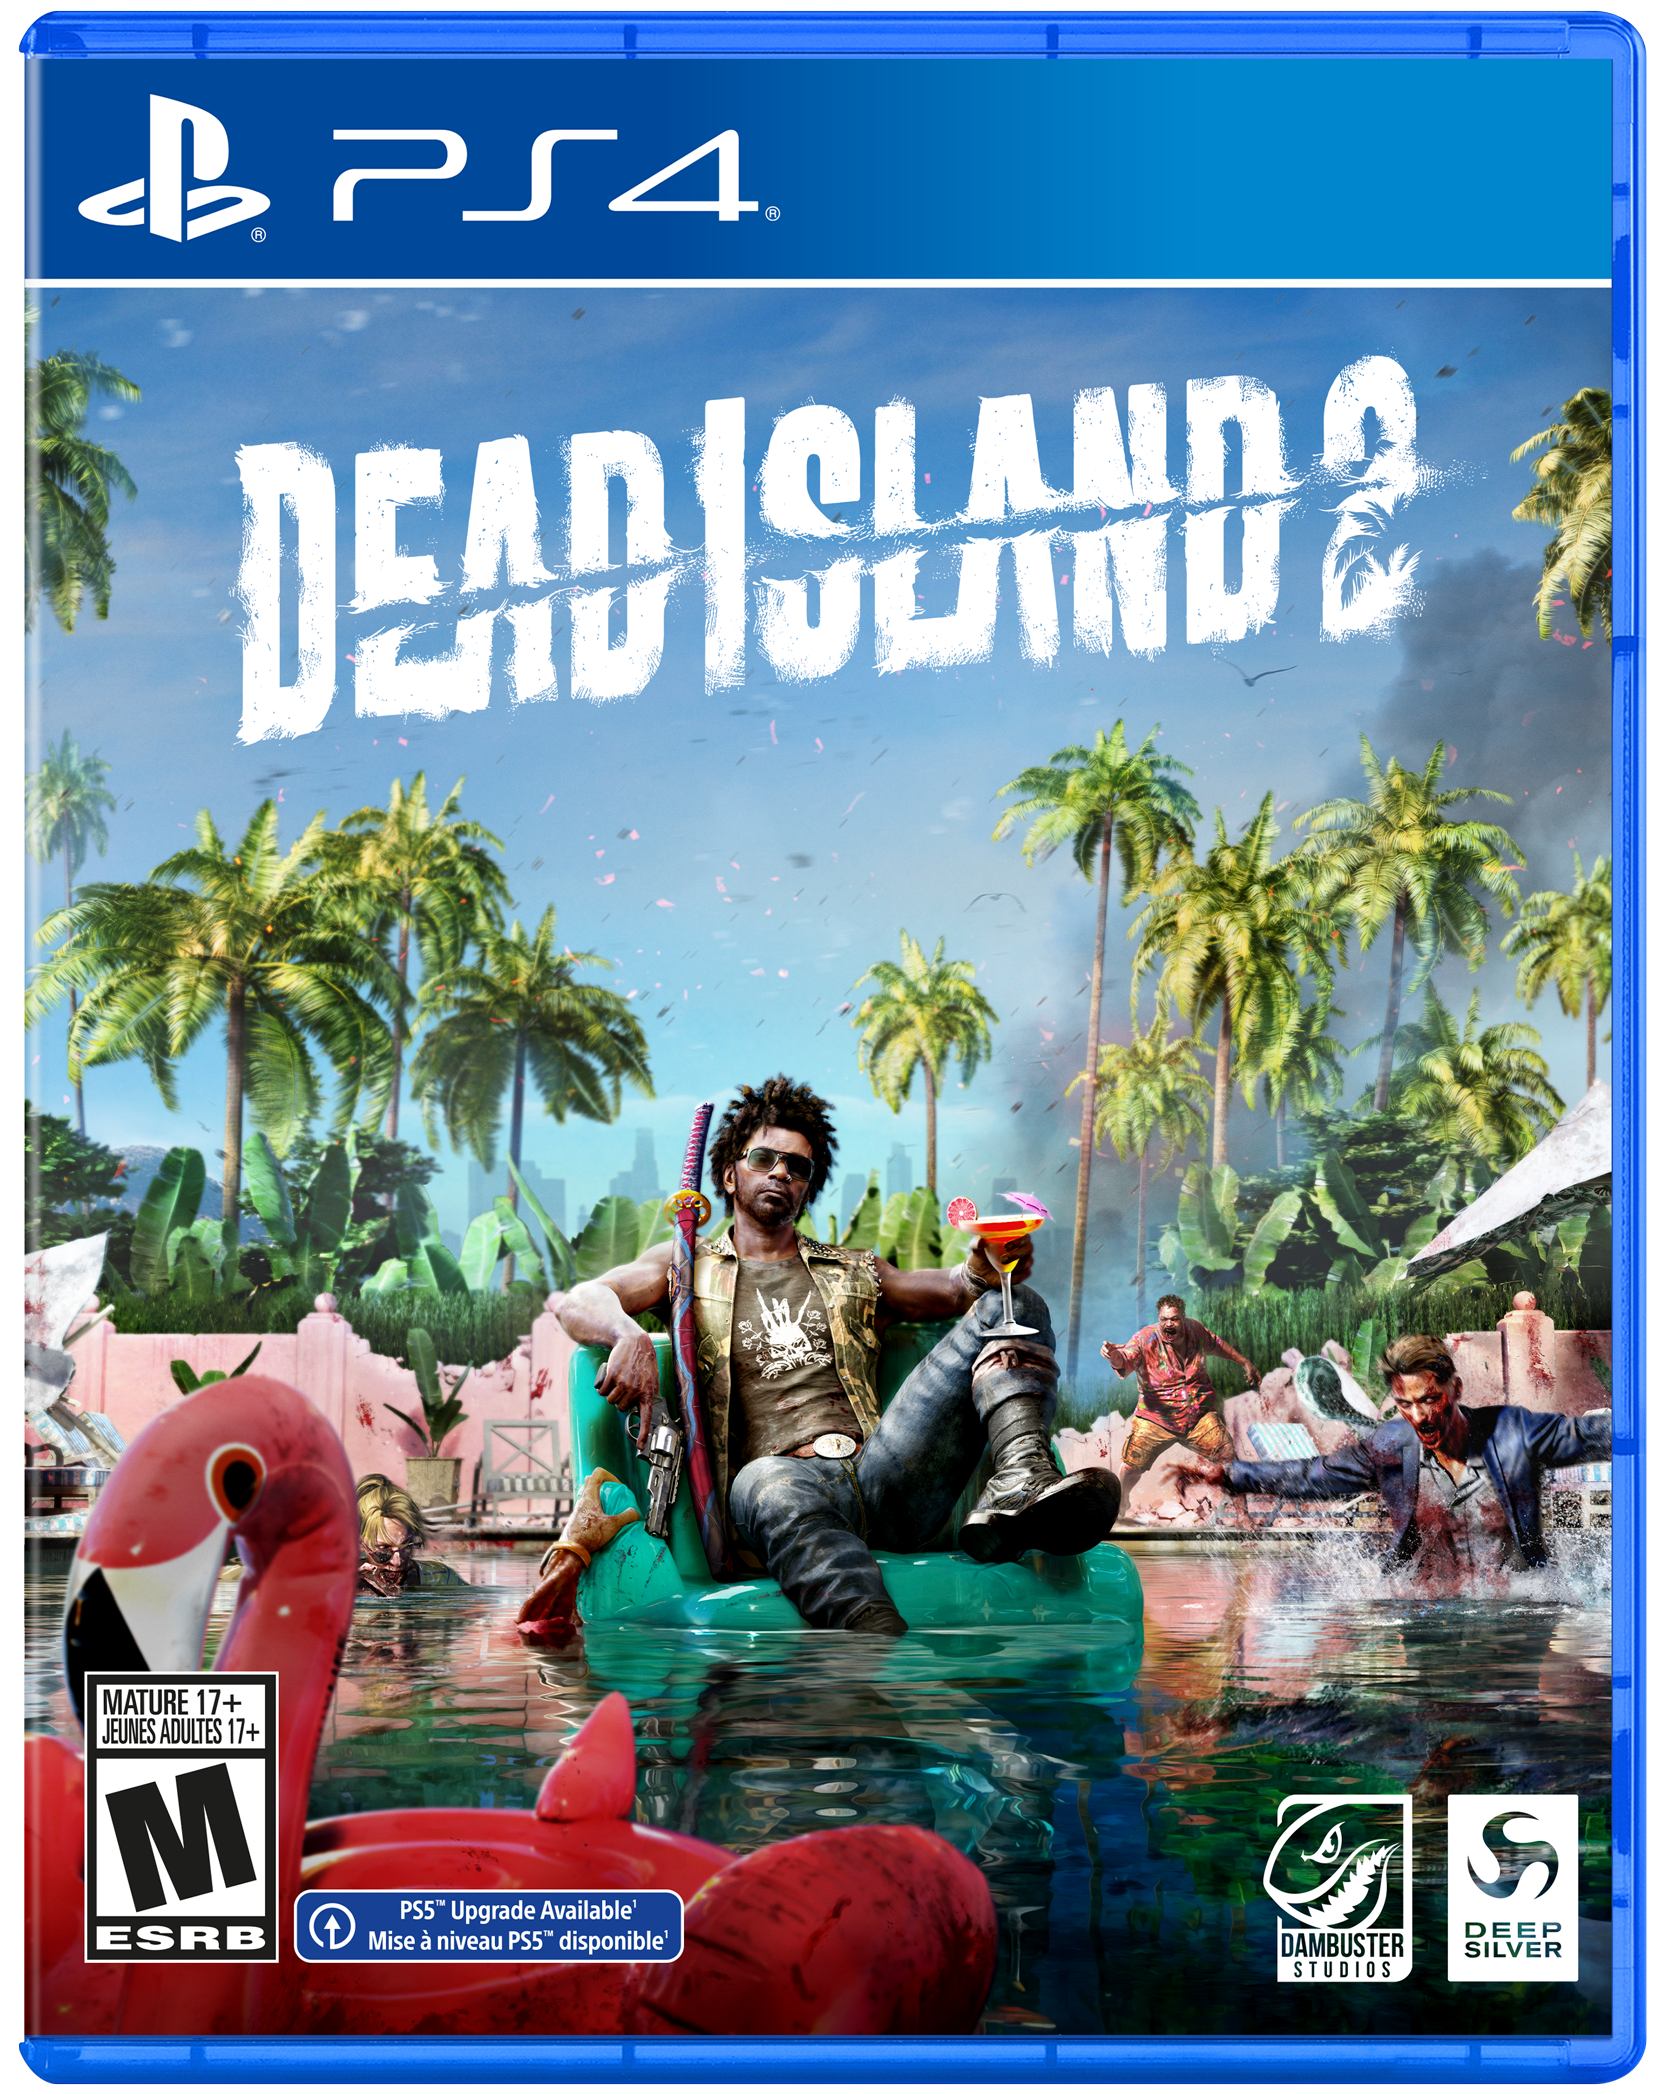 Dead Island 2 Pulp - PlayStation 4 | Deep Silver | GameStop